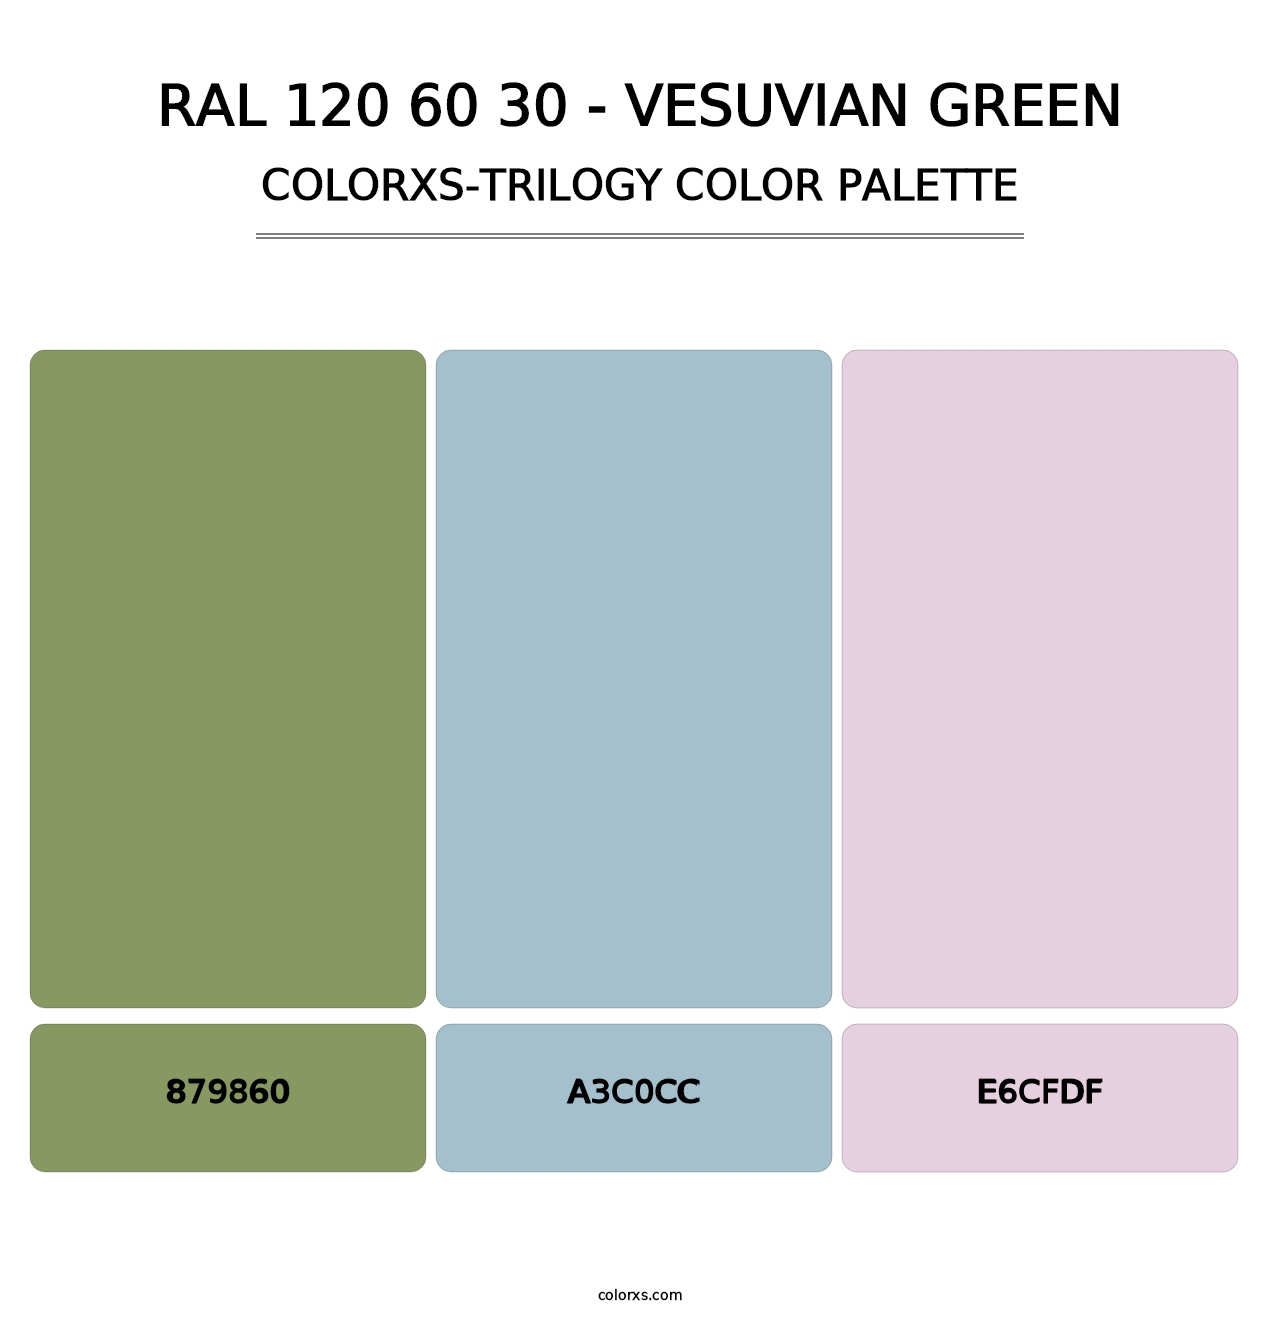 RAL 120 60 30 - Vesuvian Green - Colorxs Trilogy Palette